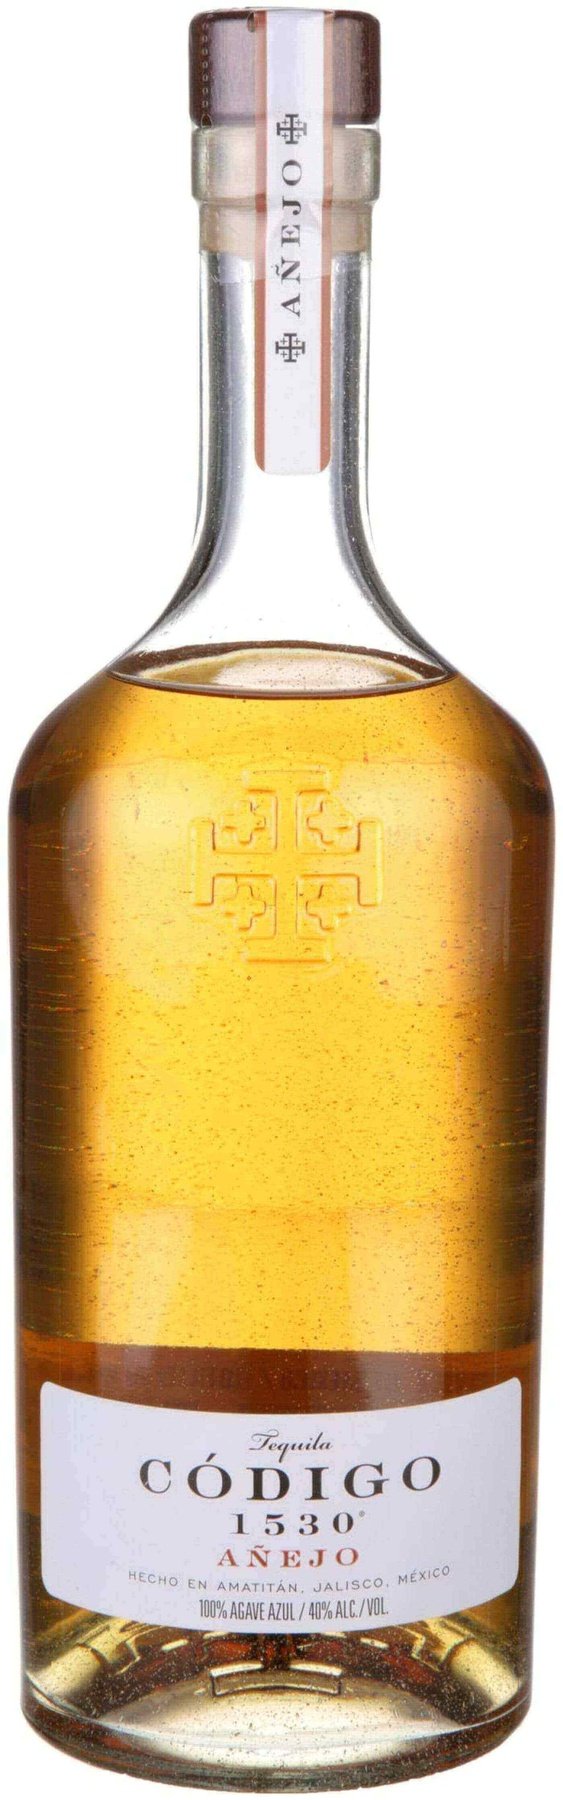 Codigo Anejo Tequila 750ml - Flask Fine Wine & Whisky